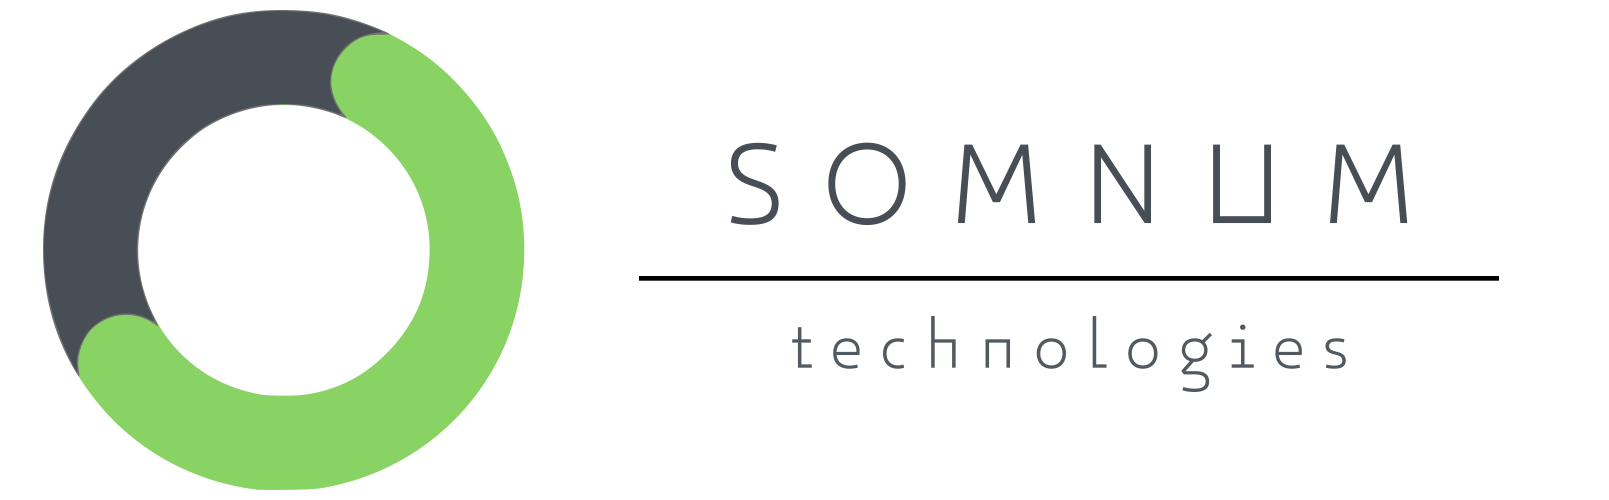 Somnum Technologies